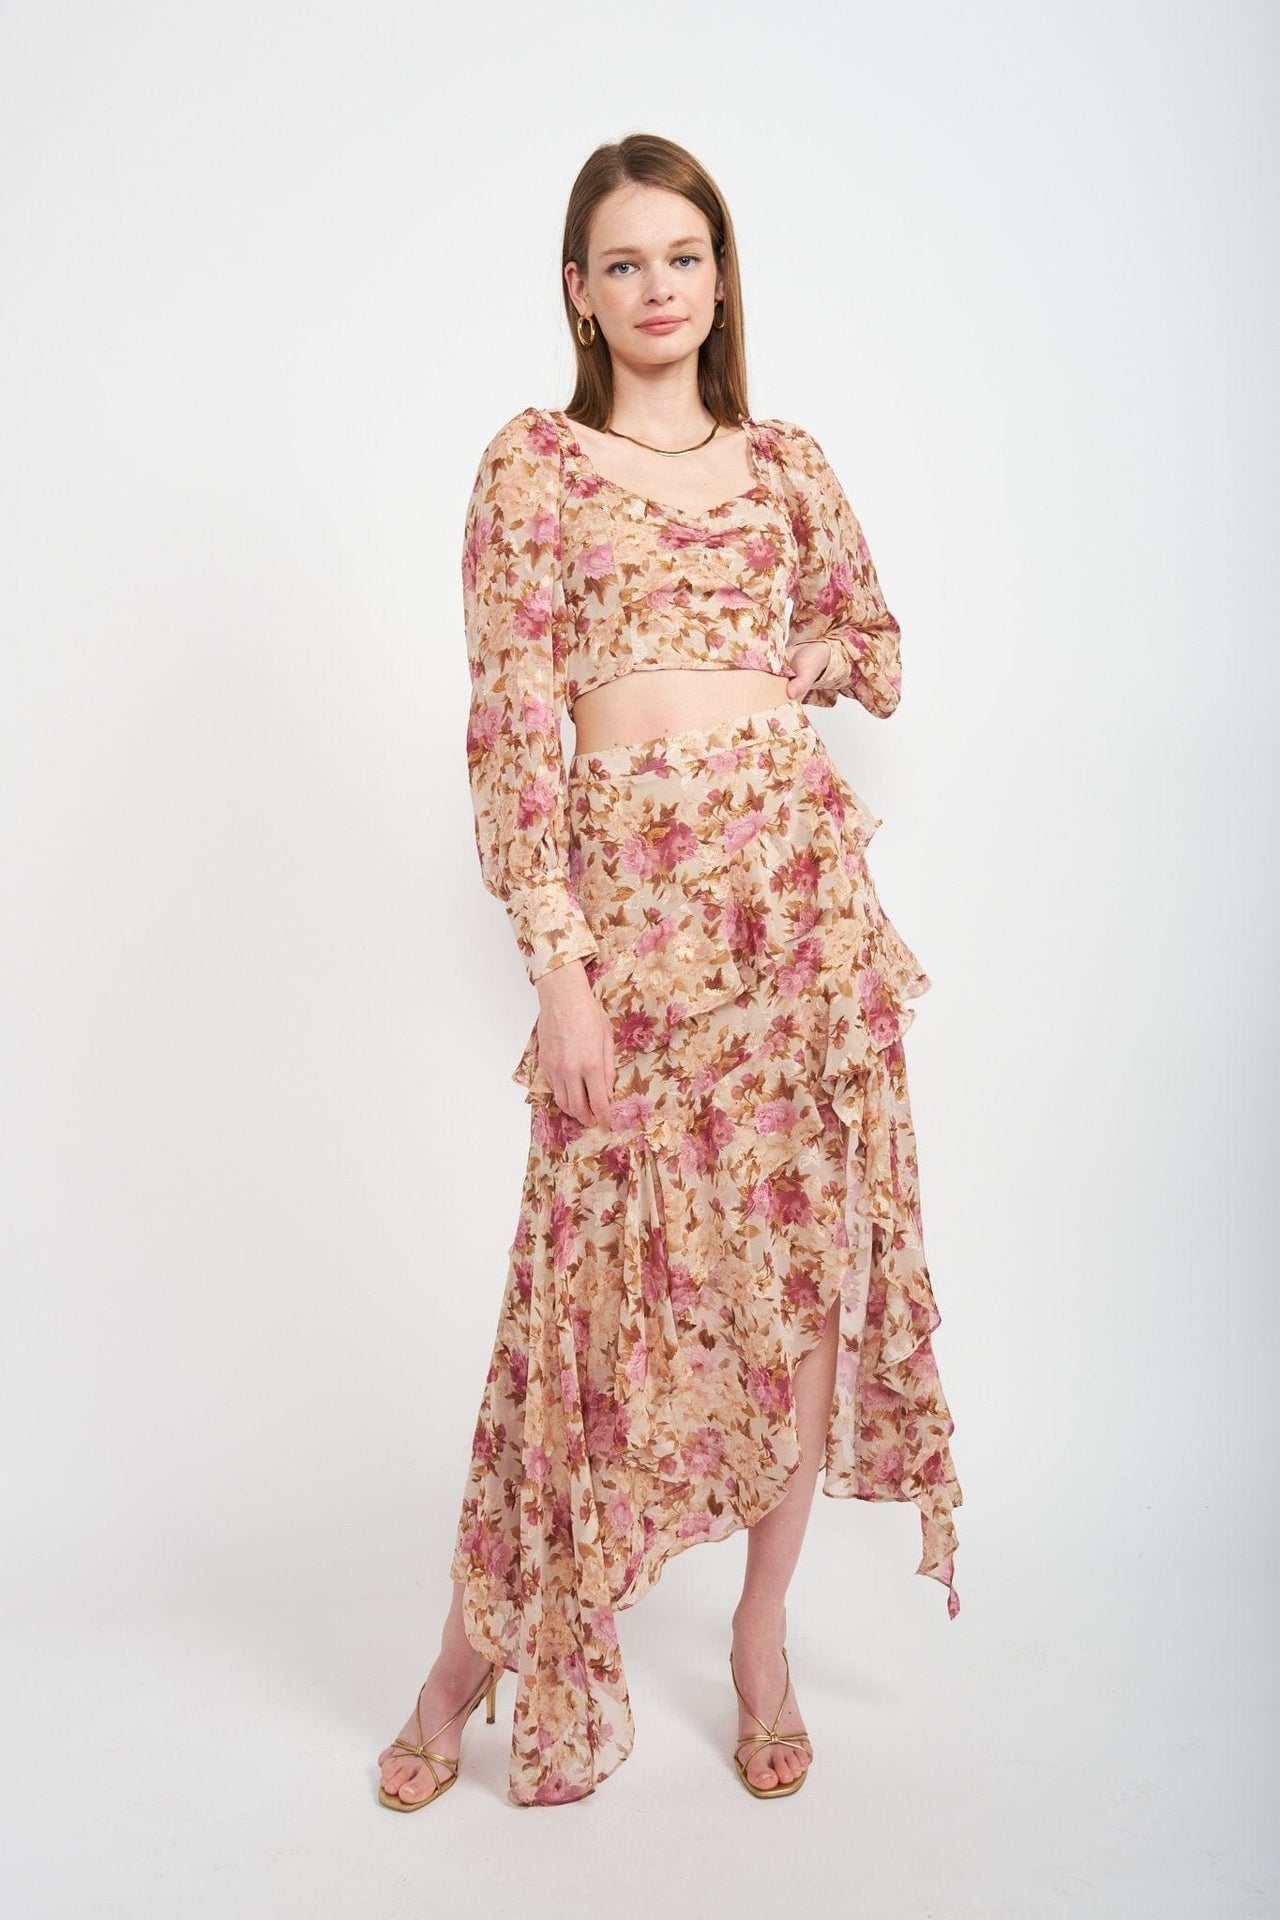 Lissandra Blouse Pink Multi, Tops Blouses by En Saison | LIT Boutique